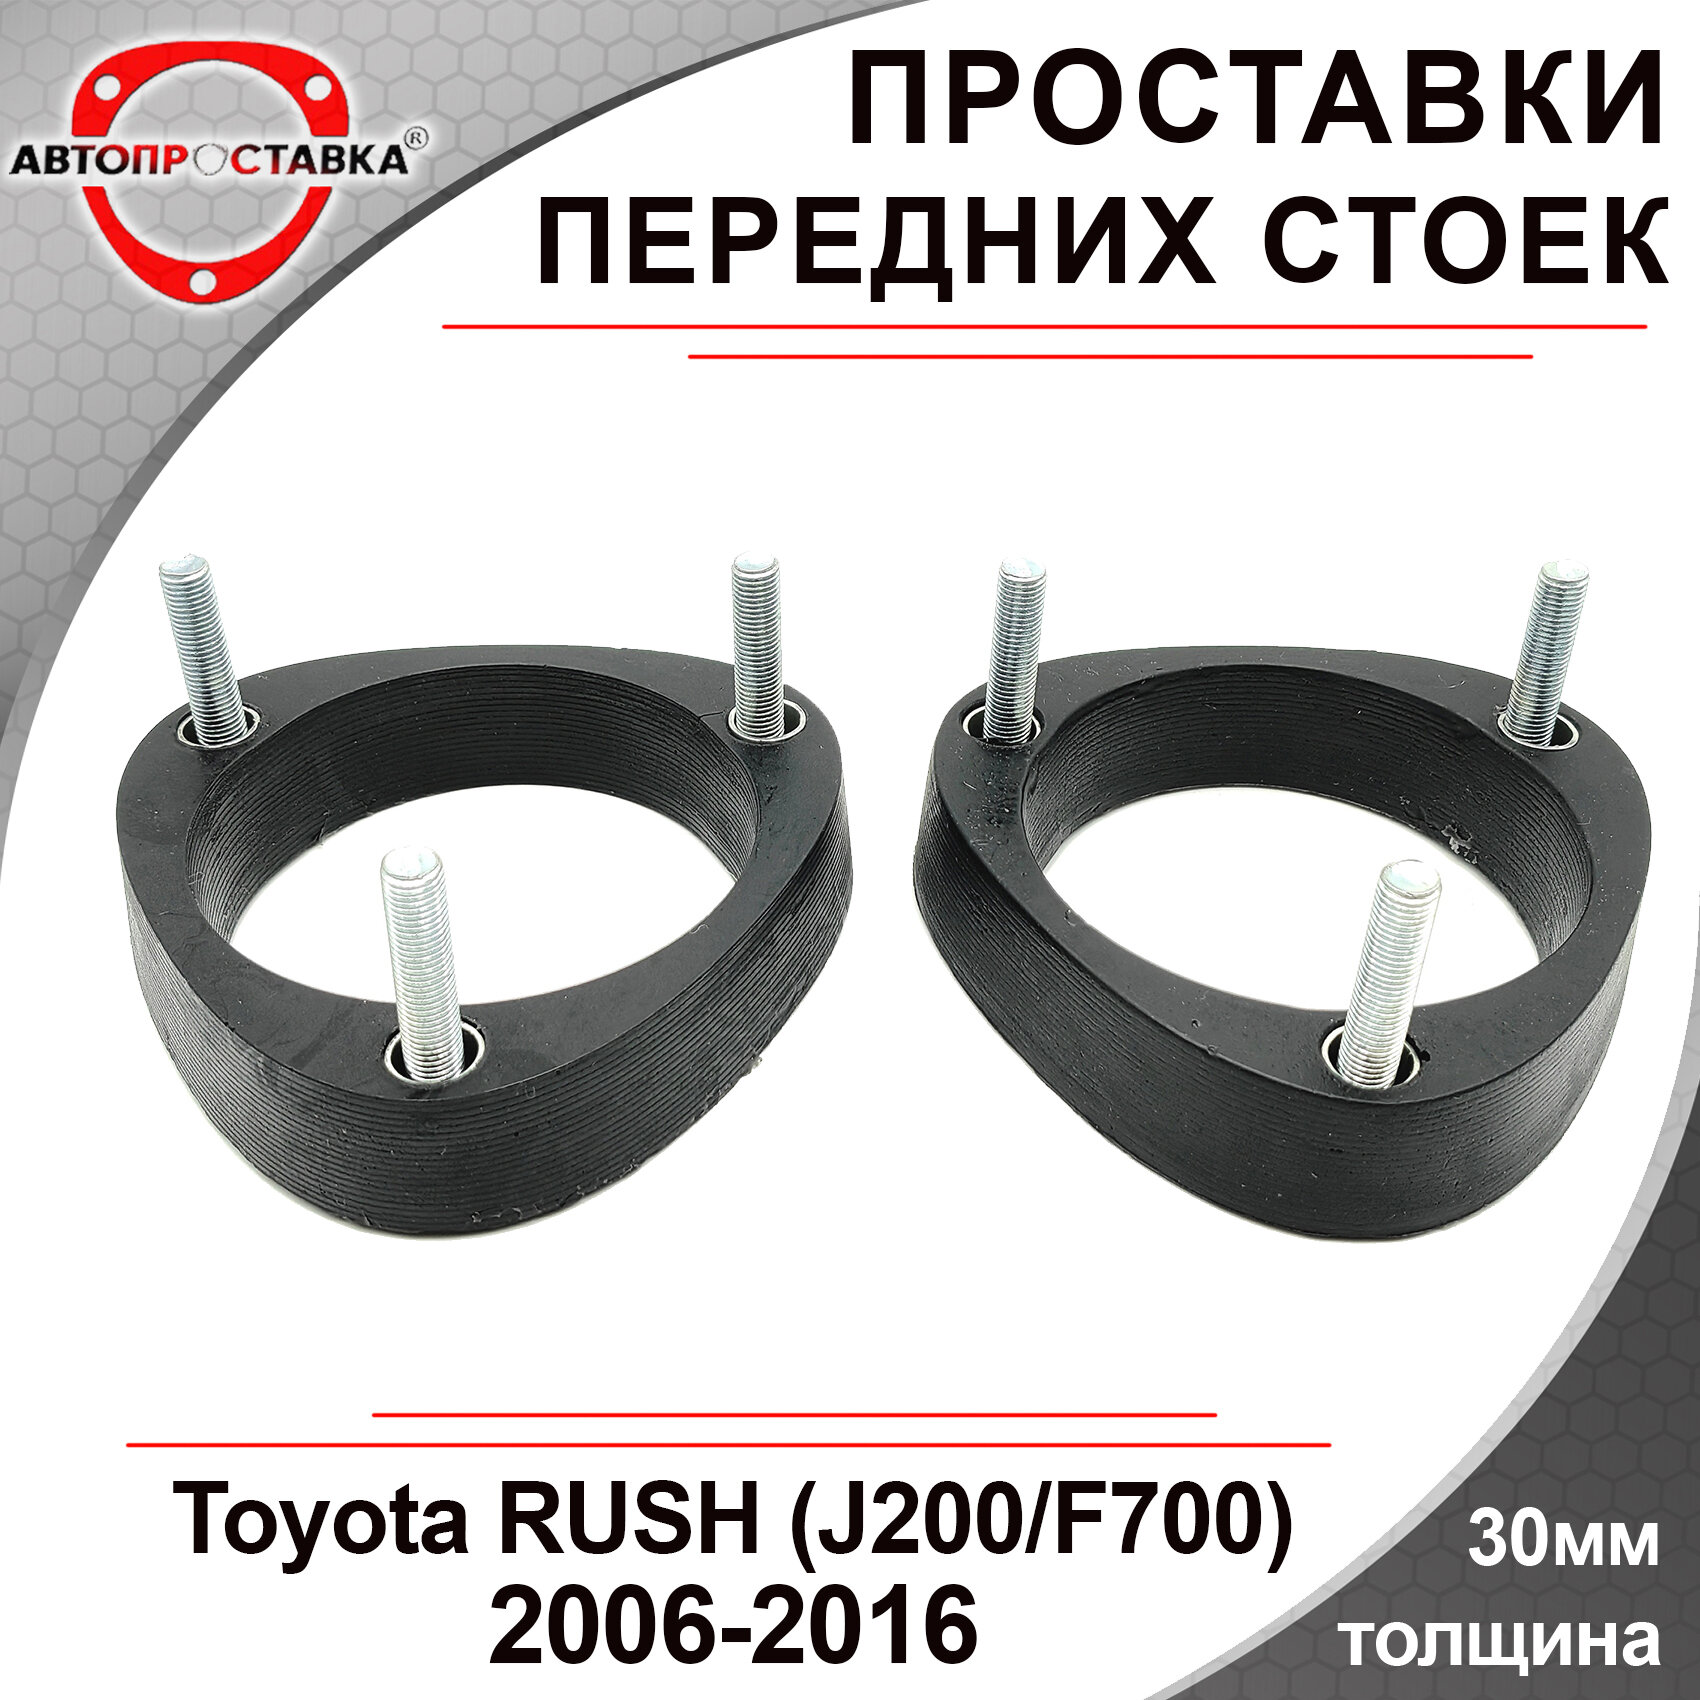 Проставки передних стоек 30мм для Toyota RUSH (J200/F700) 2006-2016 полиуретан 2шт / проставки для увеличения клиренса / Автопроставка